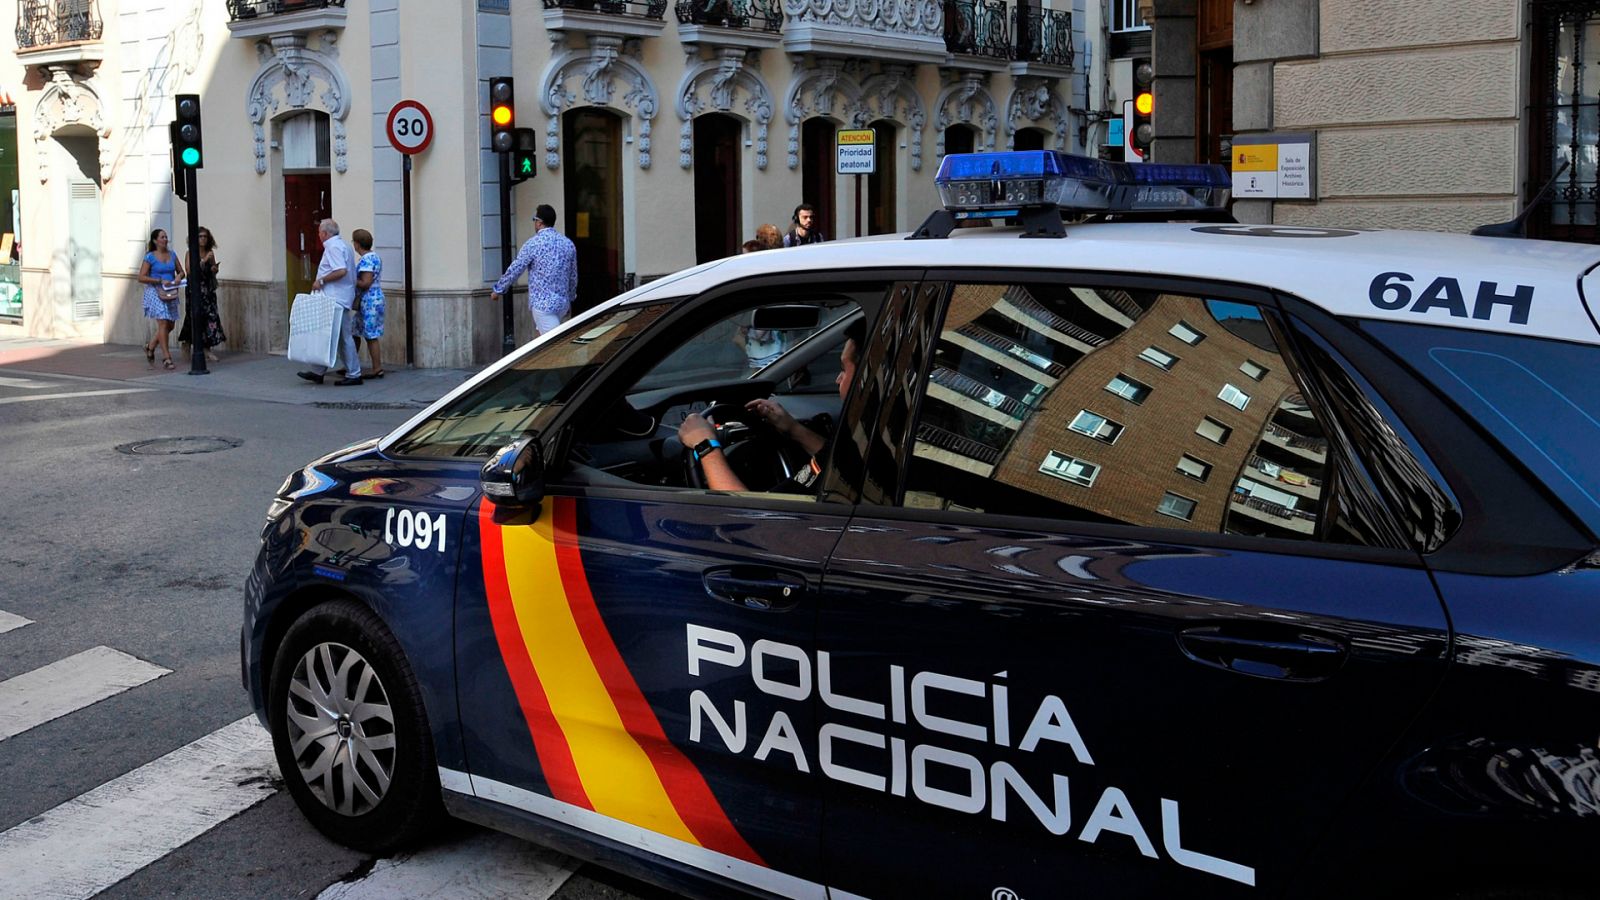 Boletines RNE - Se entrega el presunto asesino de una mujer en Castellón - Escuchar ahora